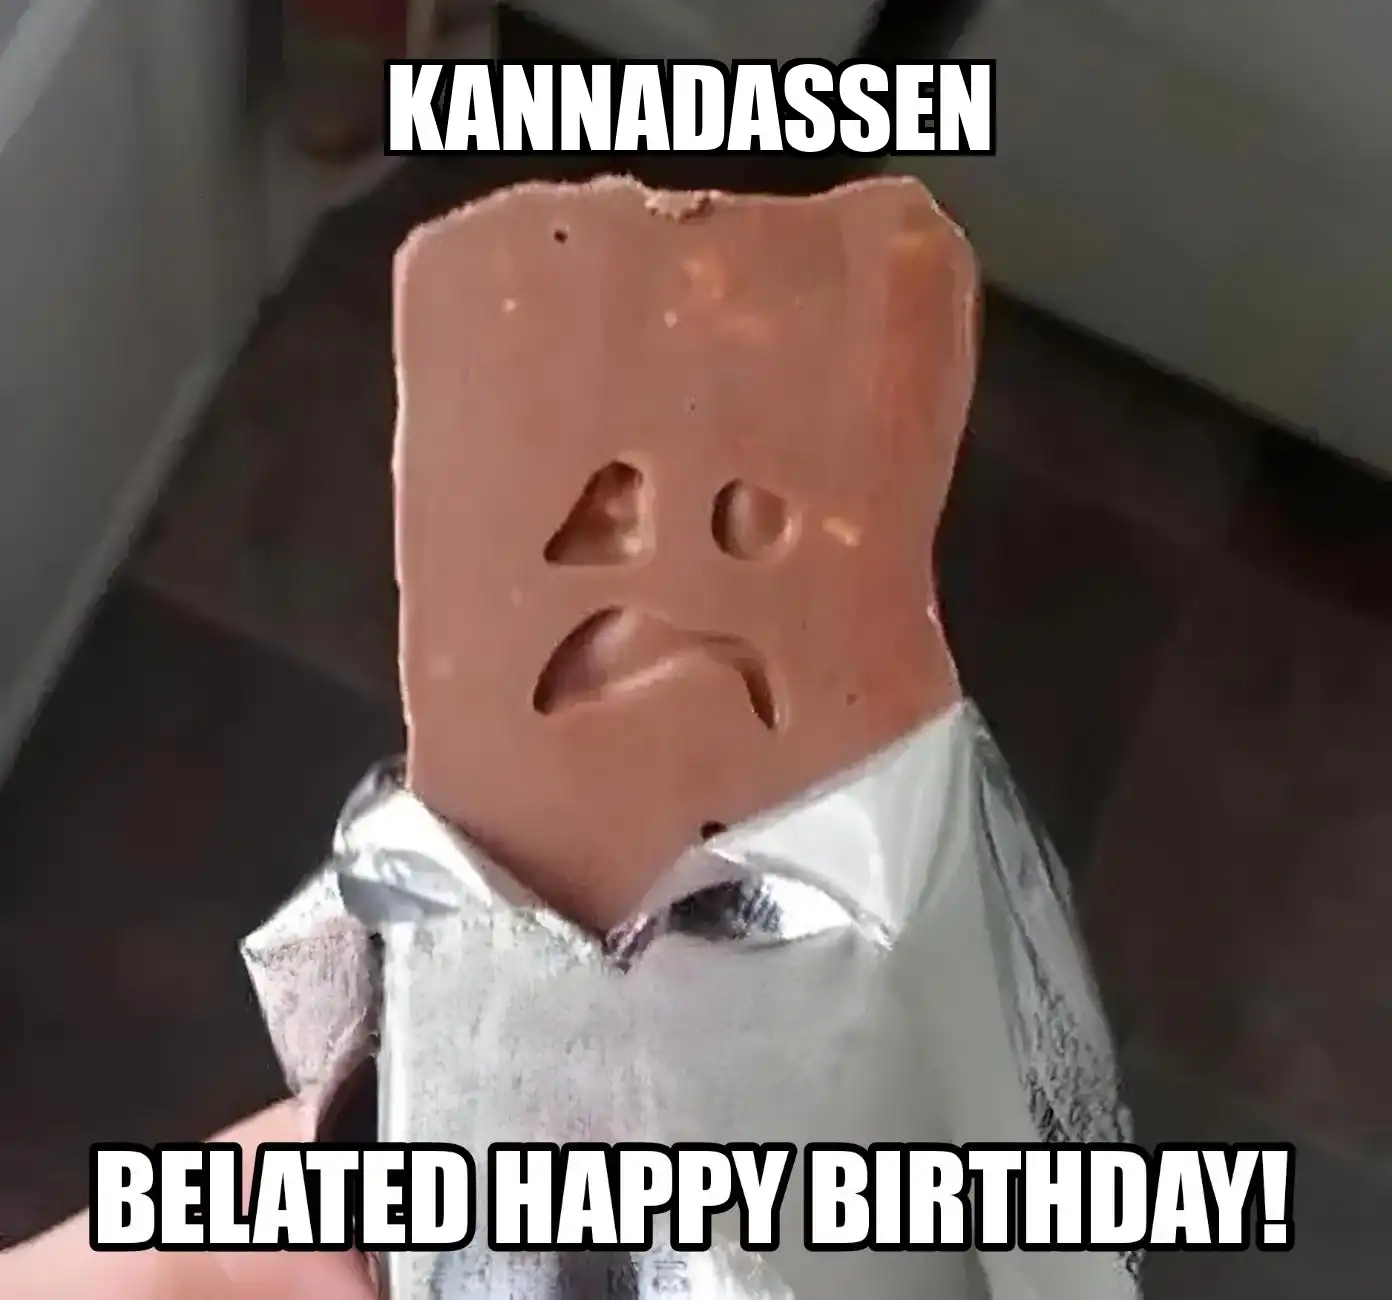 Happy Birthday Kannadassen Belated Happy Birthday Meme